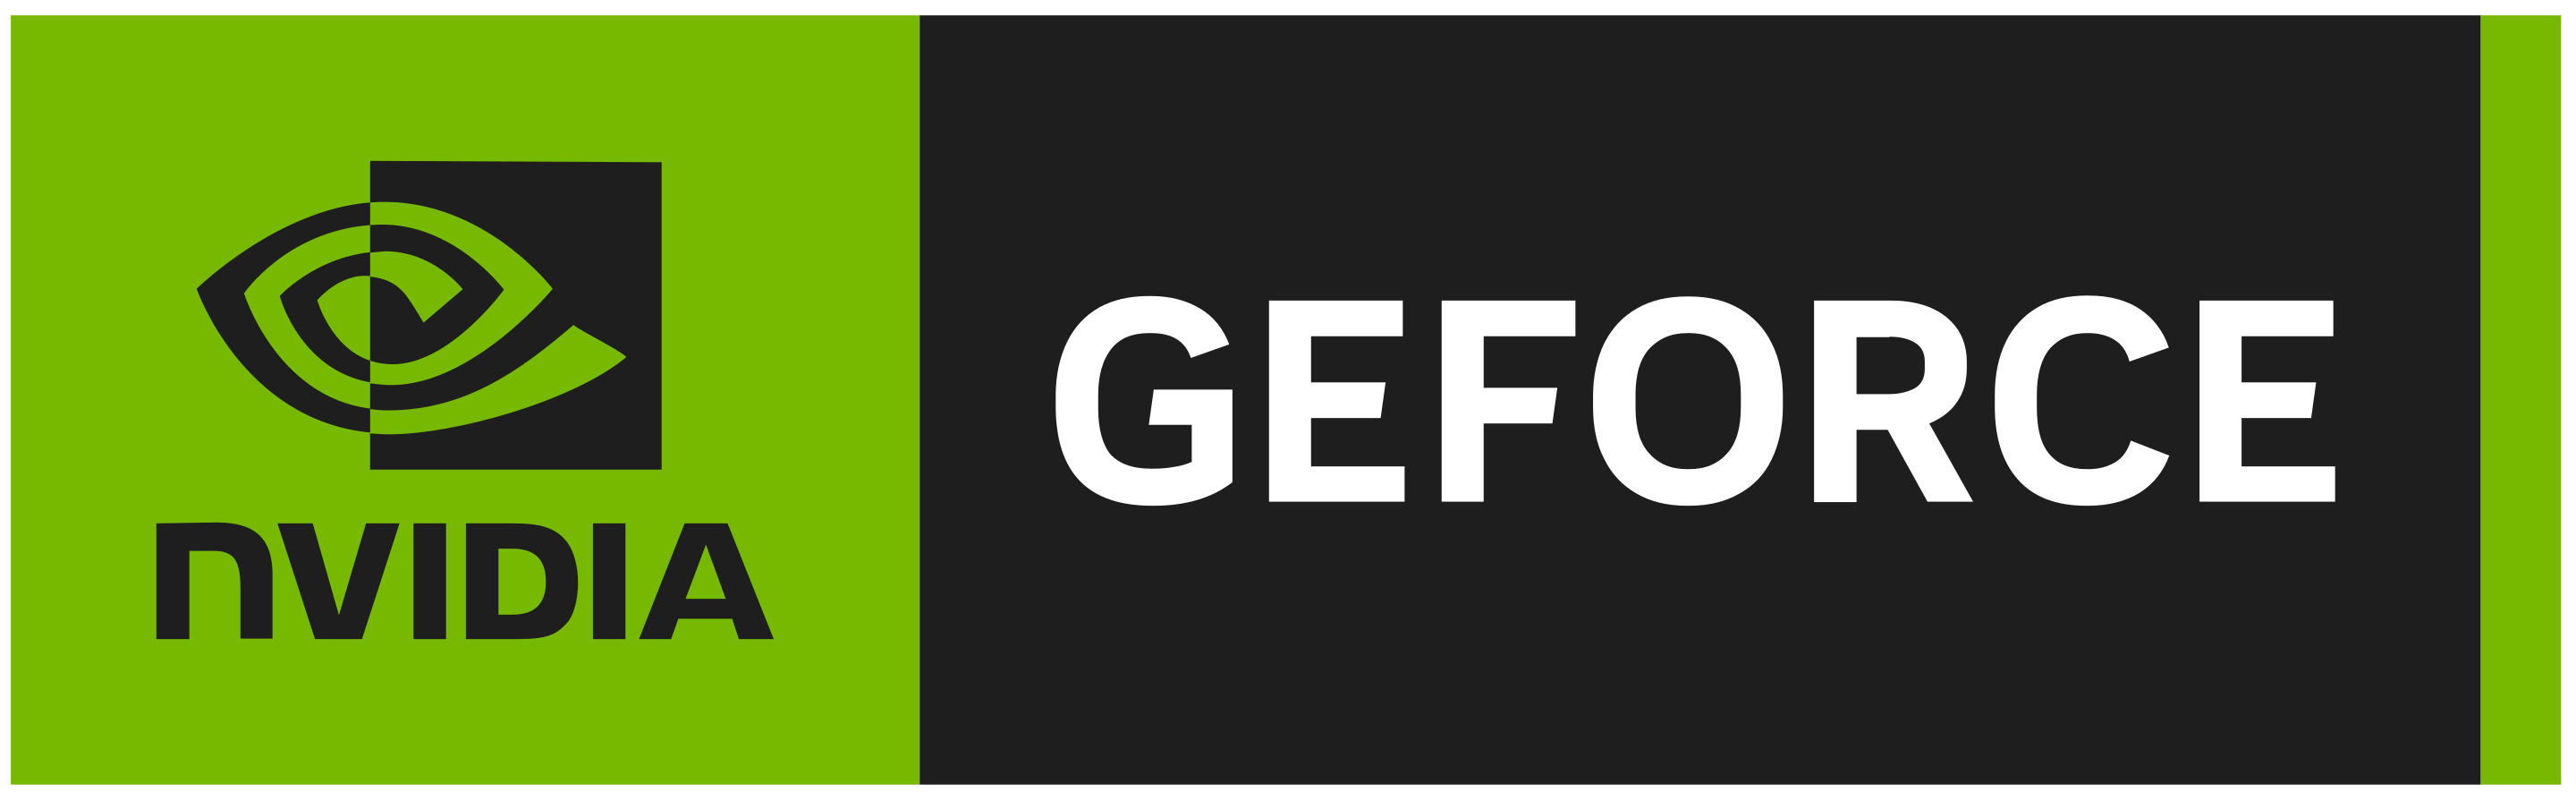 Nvidia GeForce - Серия GPU - Graphics processing unit - Графический процессор